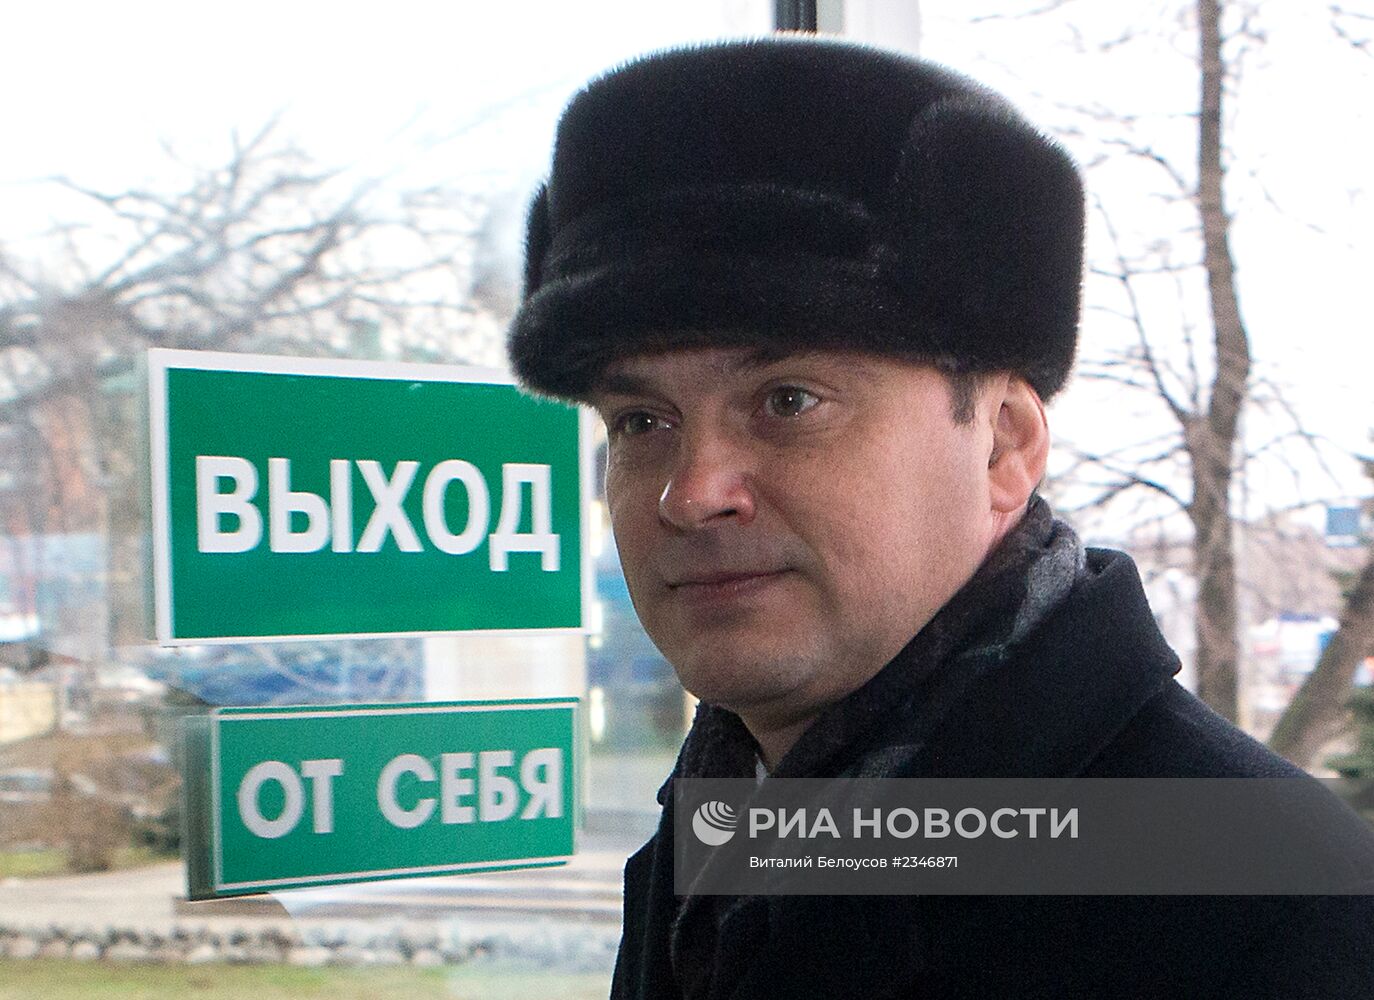 Суд отказался вернуть в прокуратуру дело депутата К.Ширшова